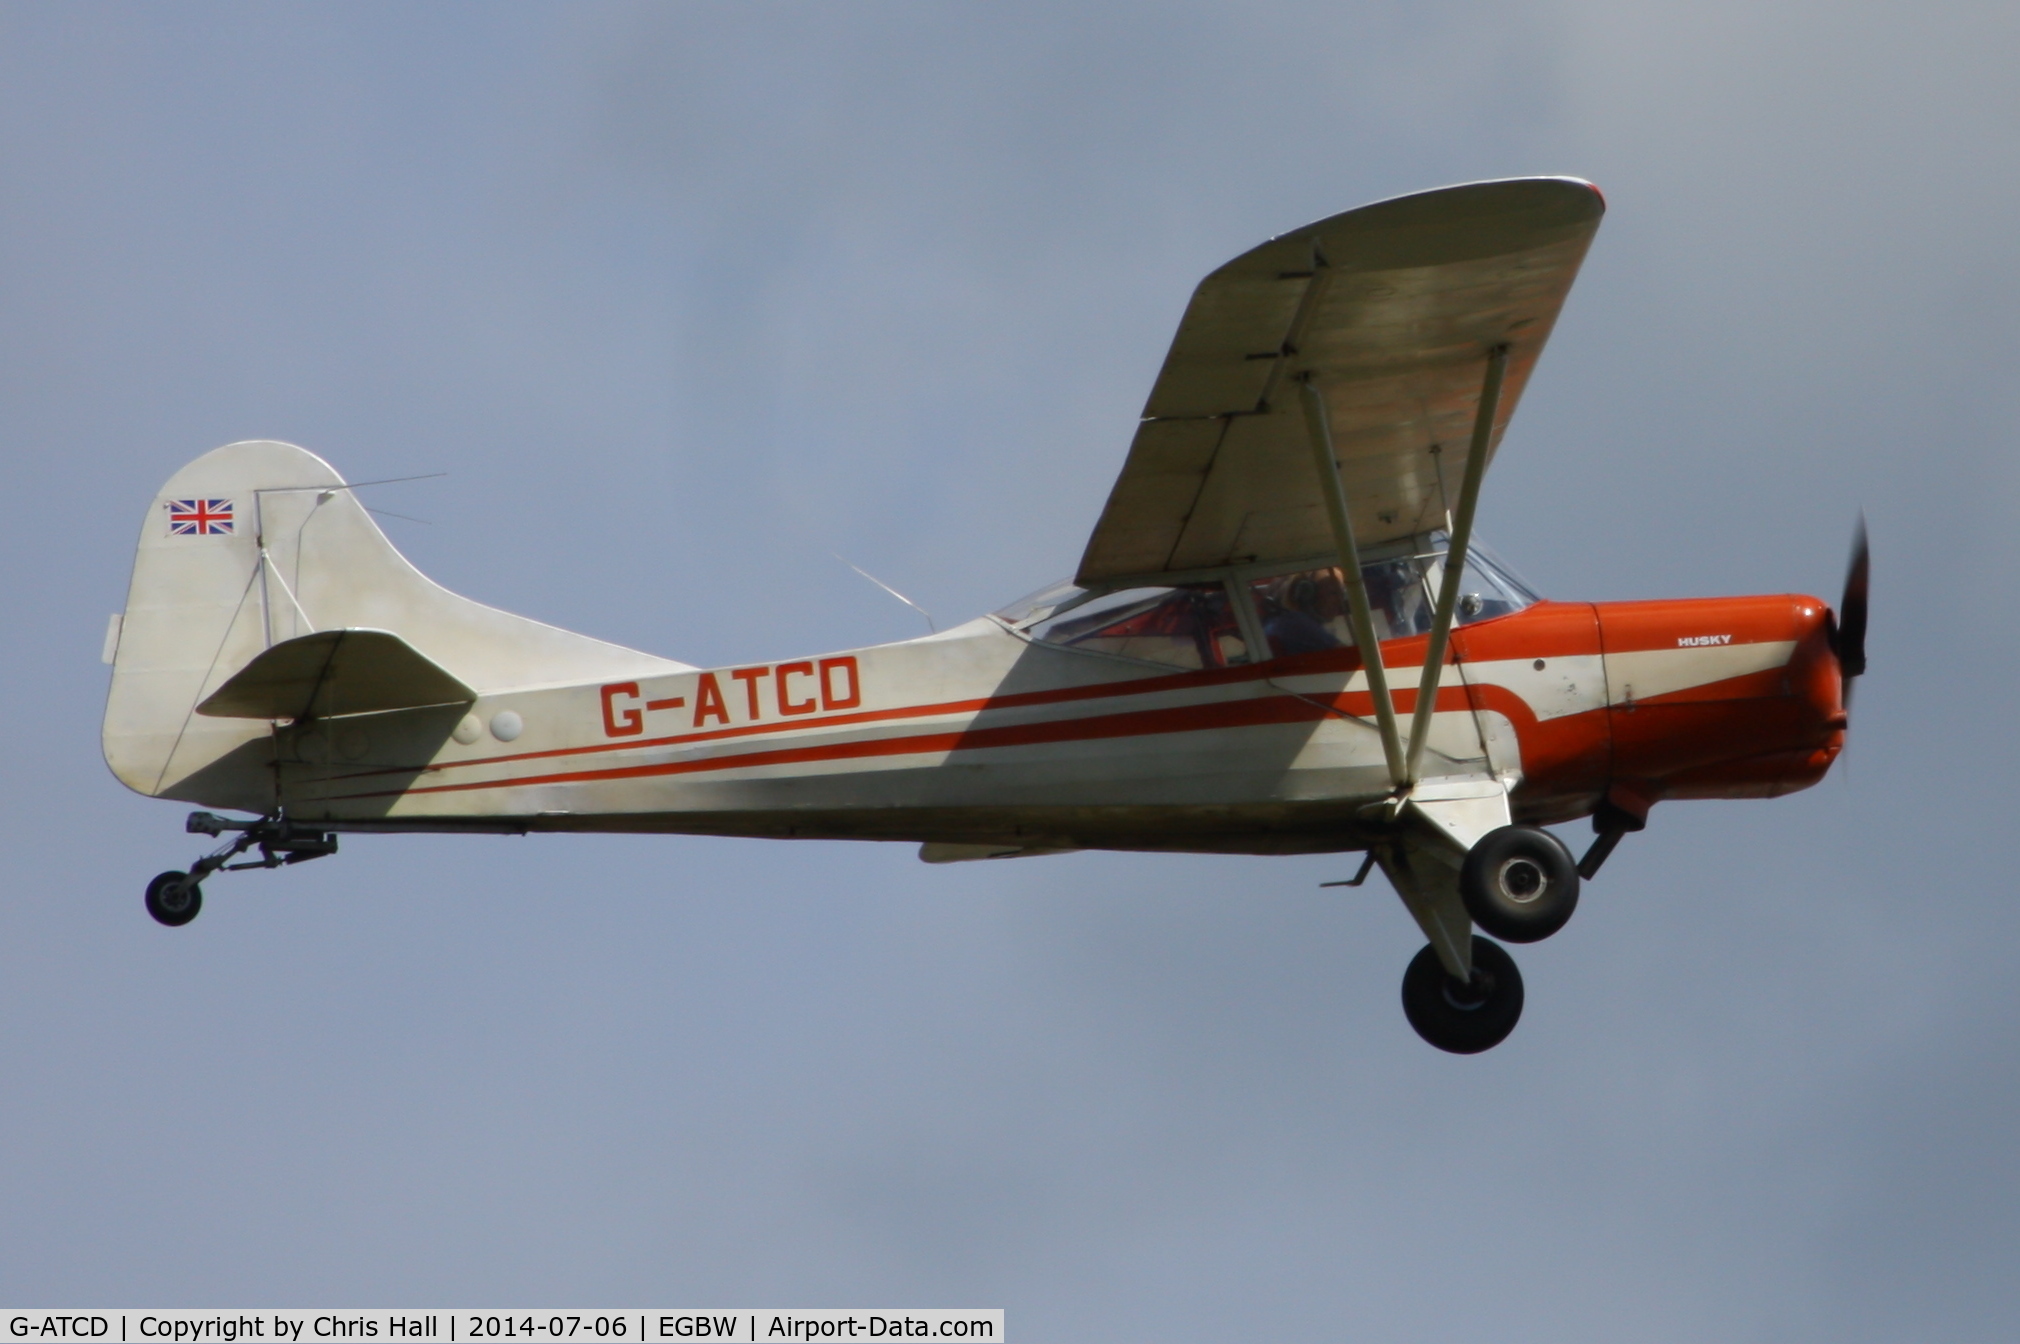 G-ATCD, 1965 Beagle D-5/180 Husky C/N 3683, at Wellesbourne Mountford